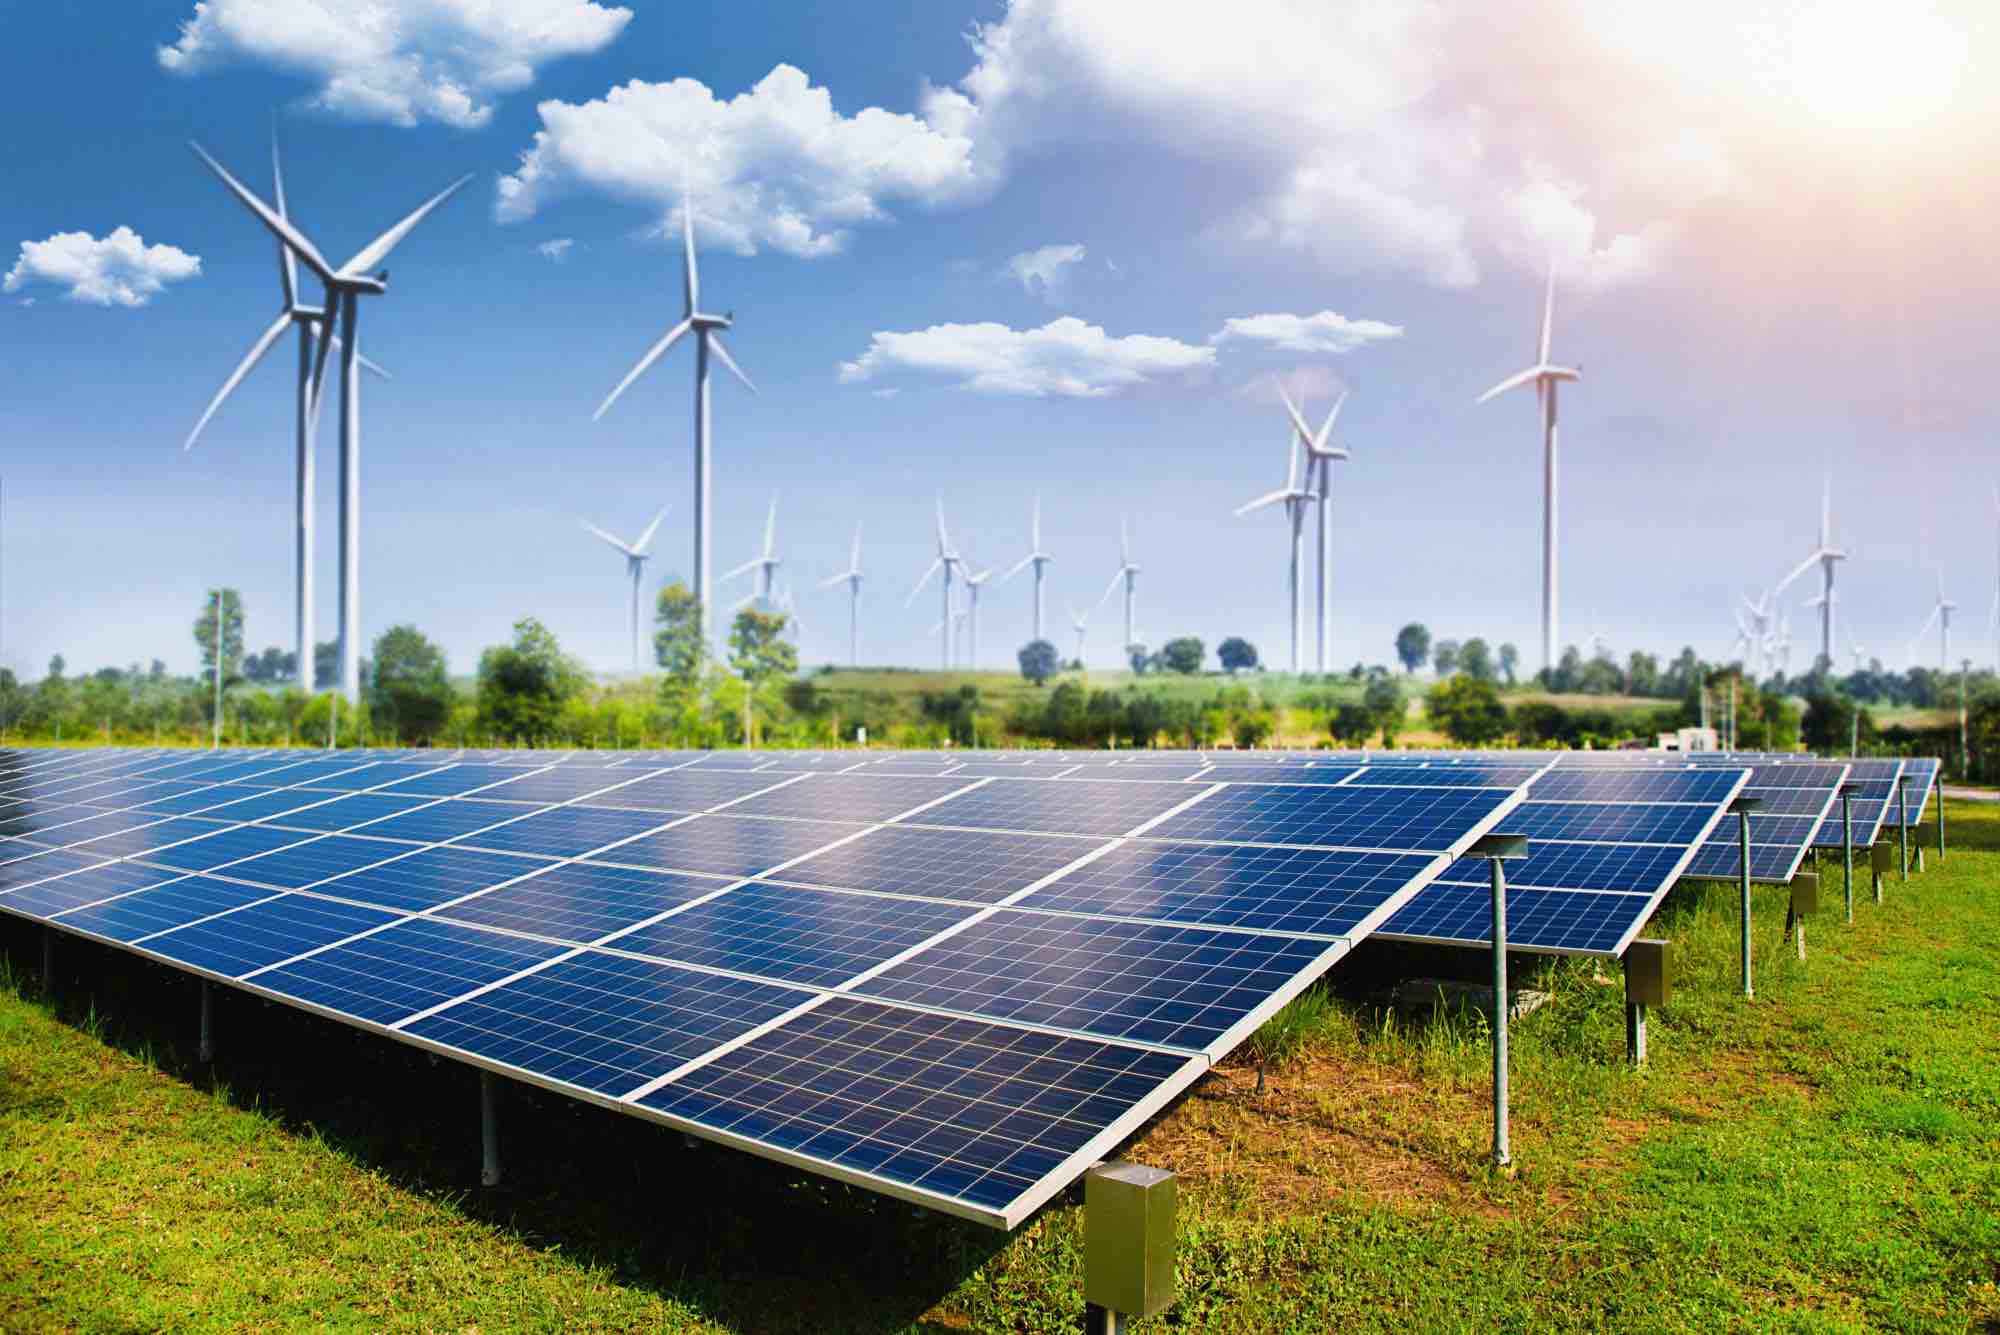 الكهرباء المصرية: تحقيق نمو ملحوظ في إنتاجية الطاقة المتجددة خلال الربع الثالث من 2022 - 2023